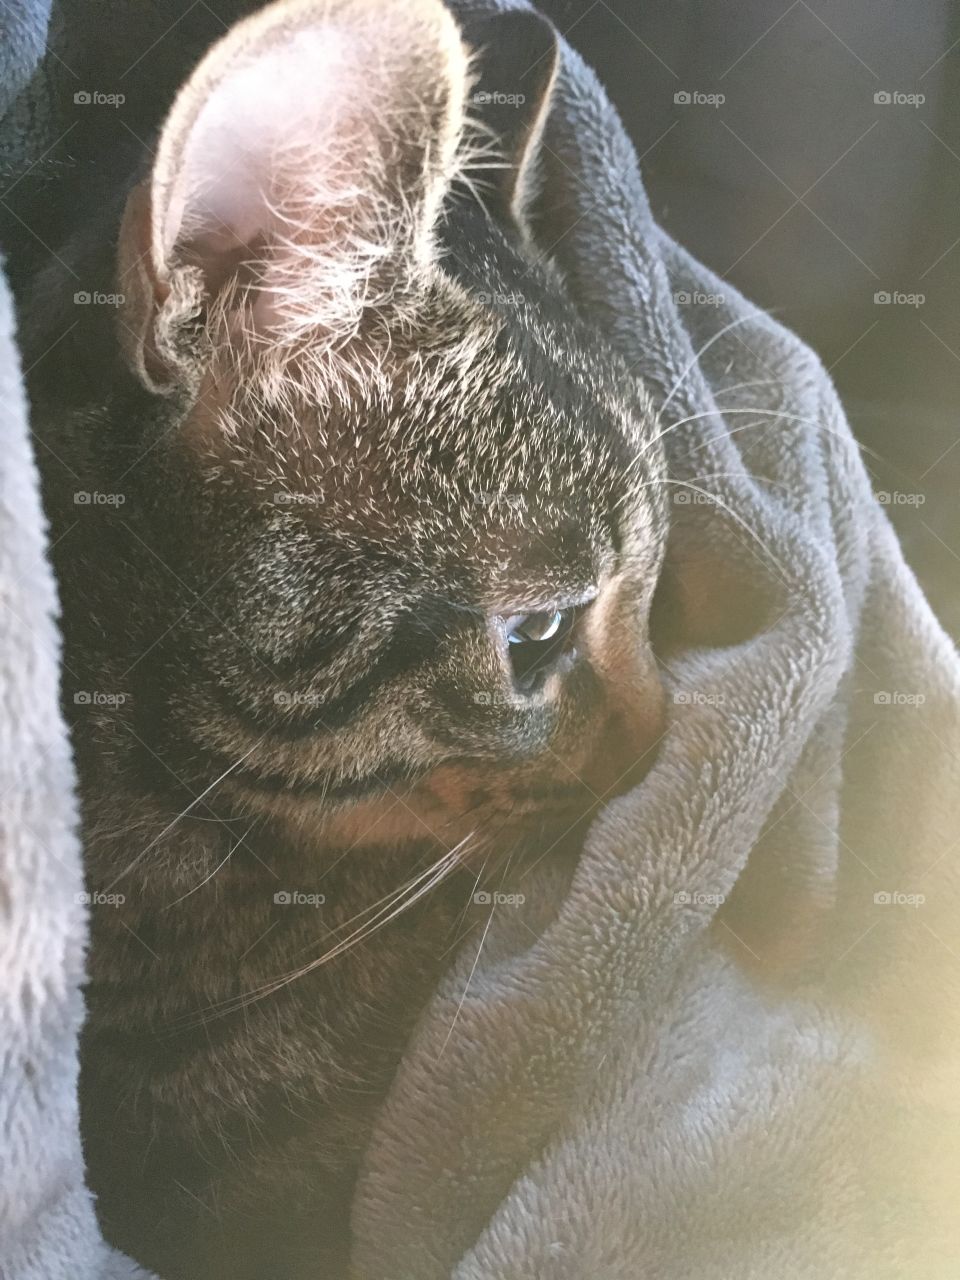 Sad kitty on blanket 